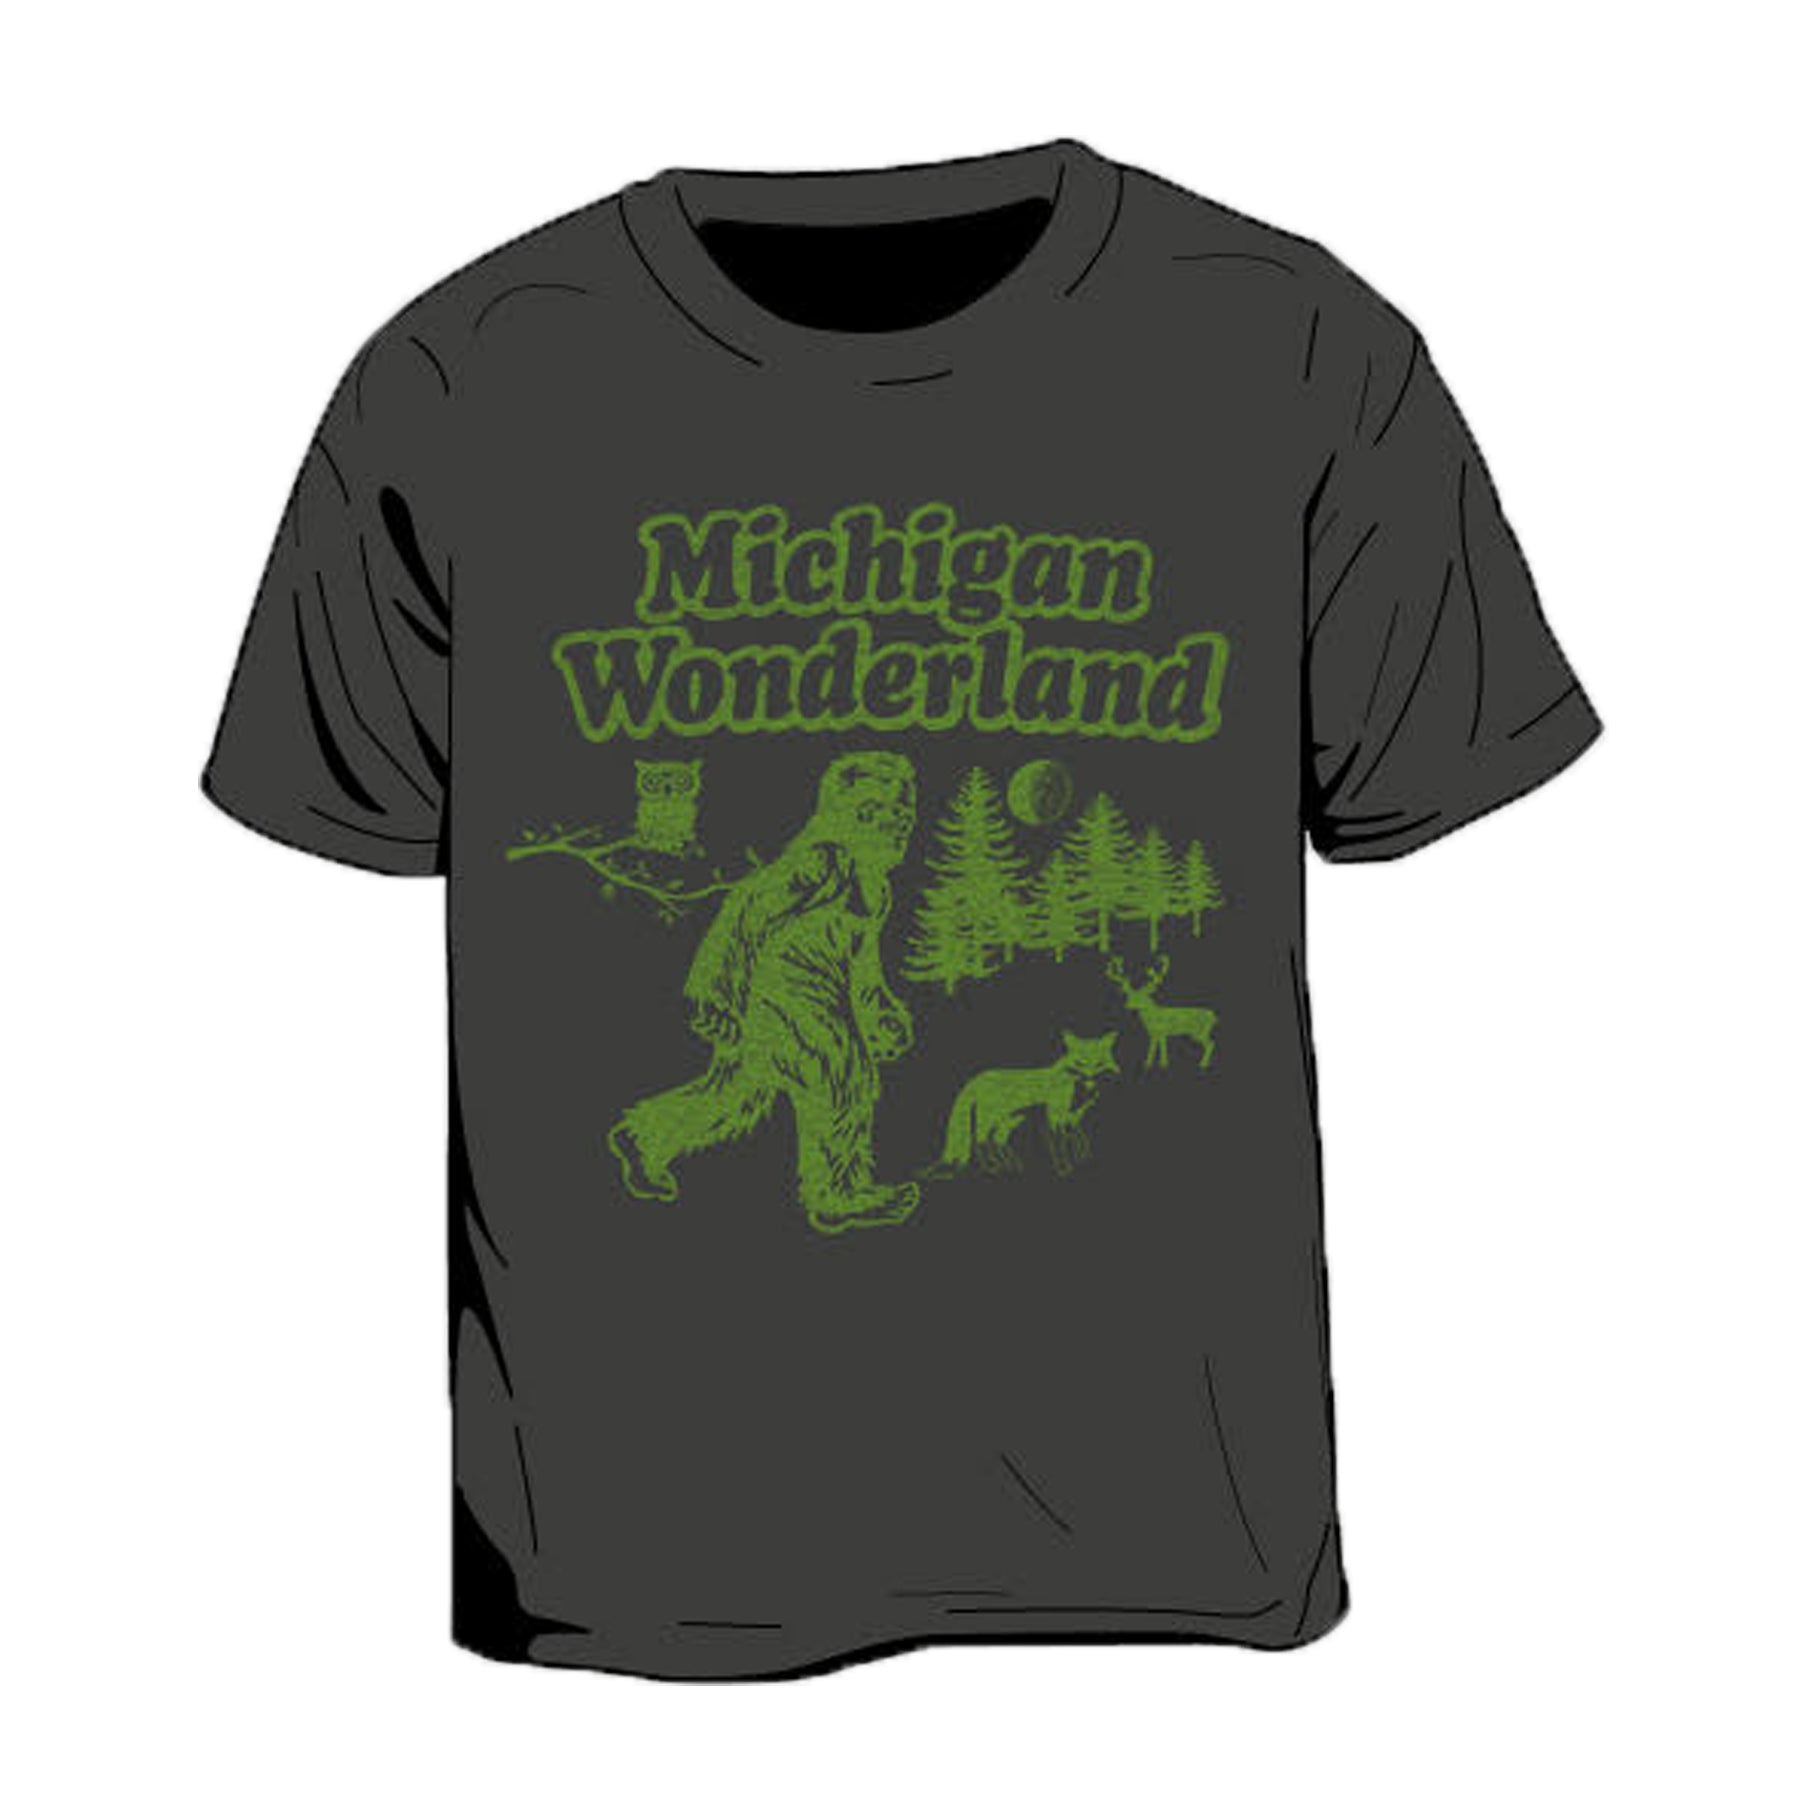 Michigan Wonderland Kid's T-Shirt